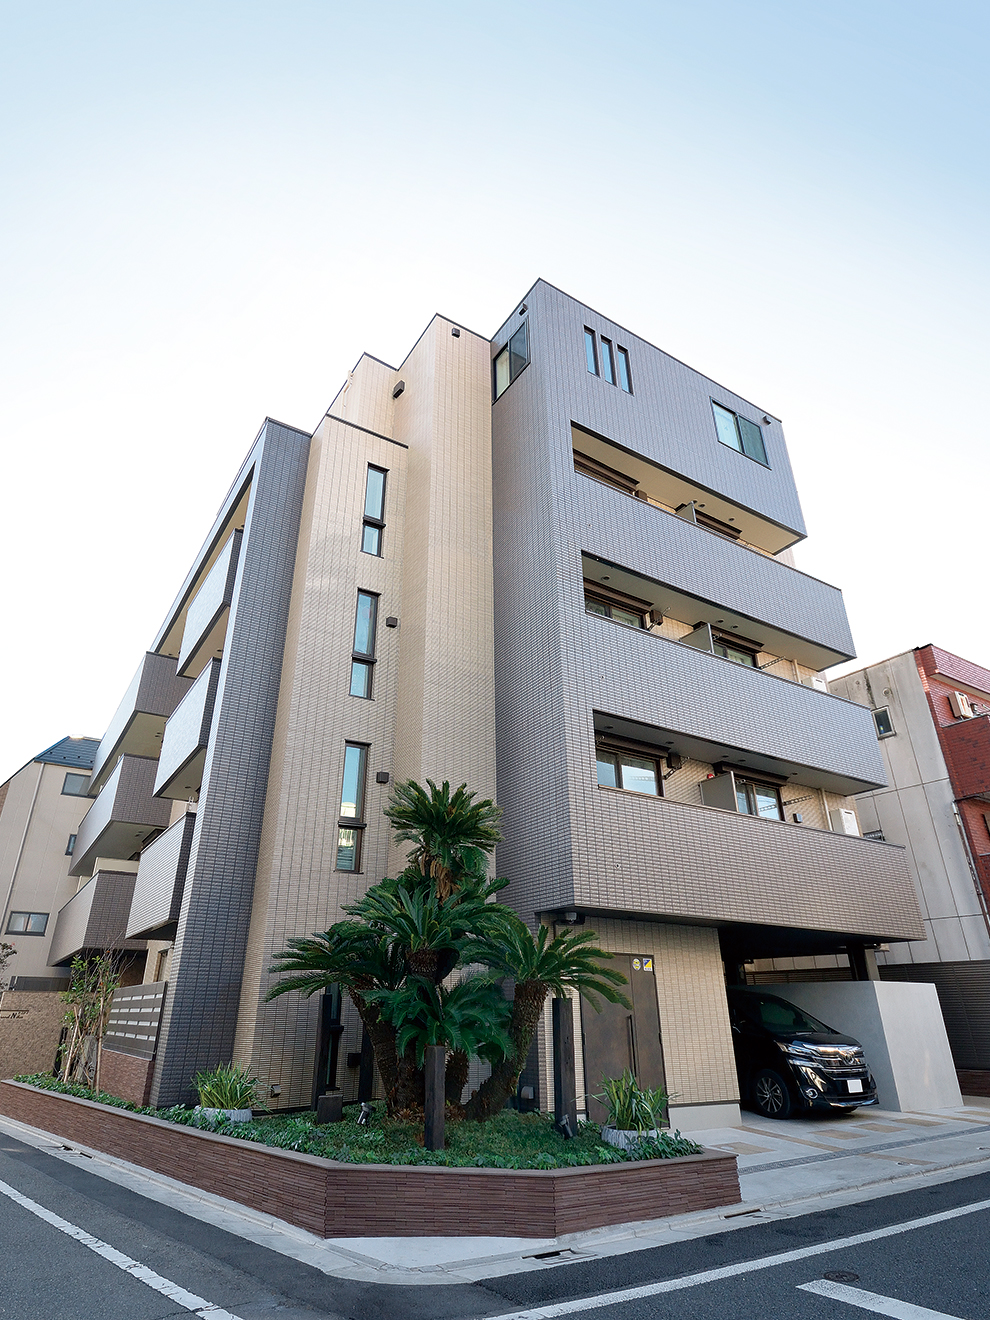 2棟の建物を1棟5階建てに建て替えた東京・目黒区のS邸。1〜4階は賃貸住宅、自宅フロアとなる5階は親世帯と子世帯の二世帯住宅としている